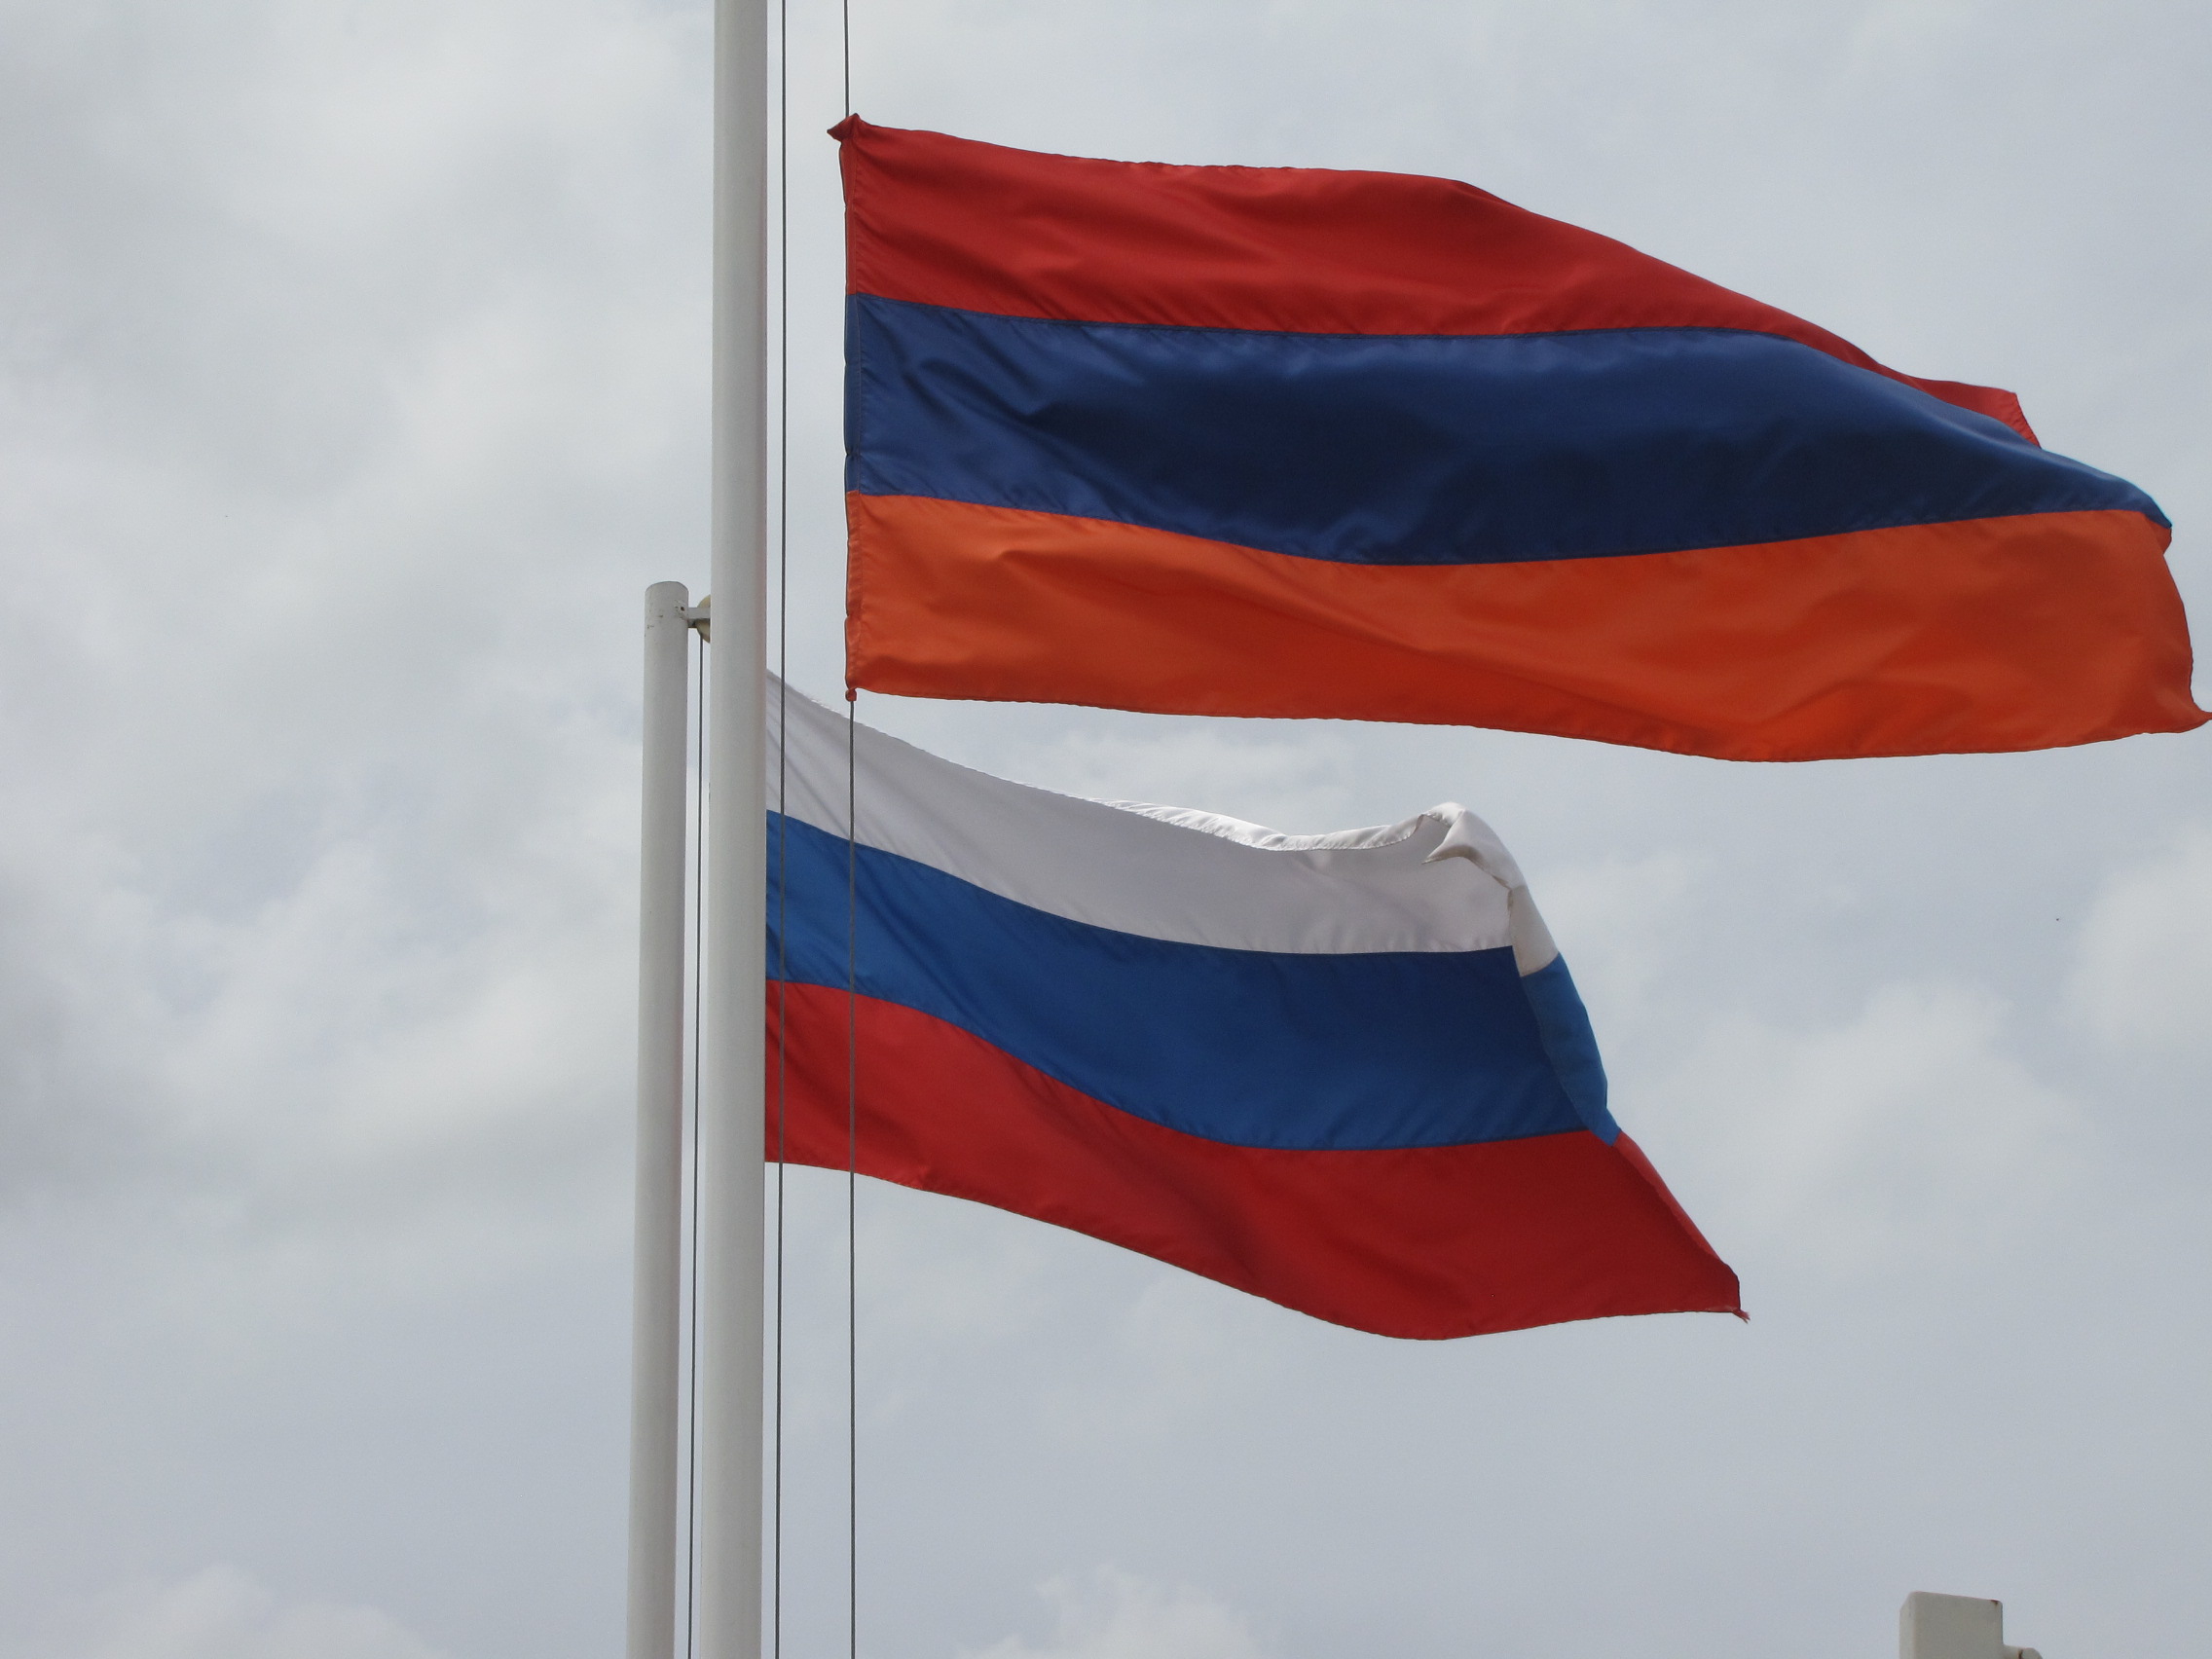 ՌԴ-ՀՀ կապերը չպետք է գերի դառնան ներքաղաքական կոնյուկտուրային